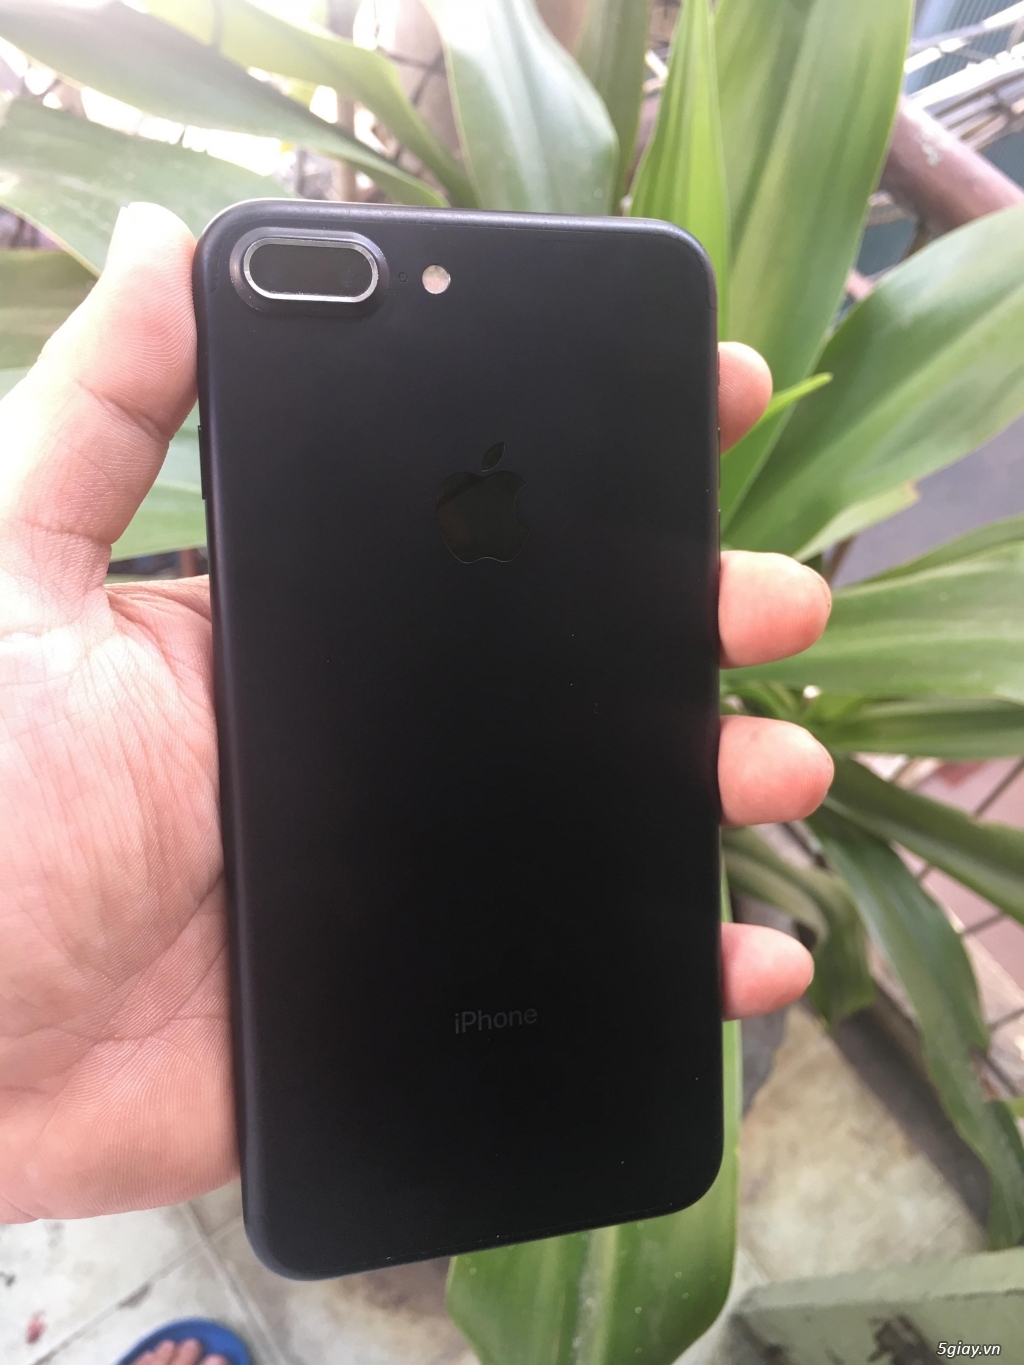 Iphone 7plus QT 32GB đen nhám chất ! - 3